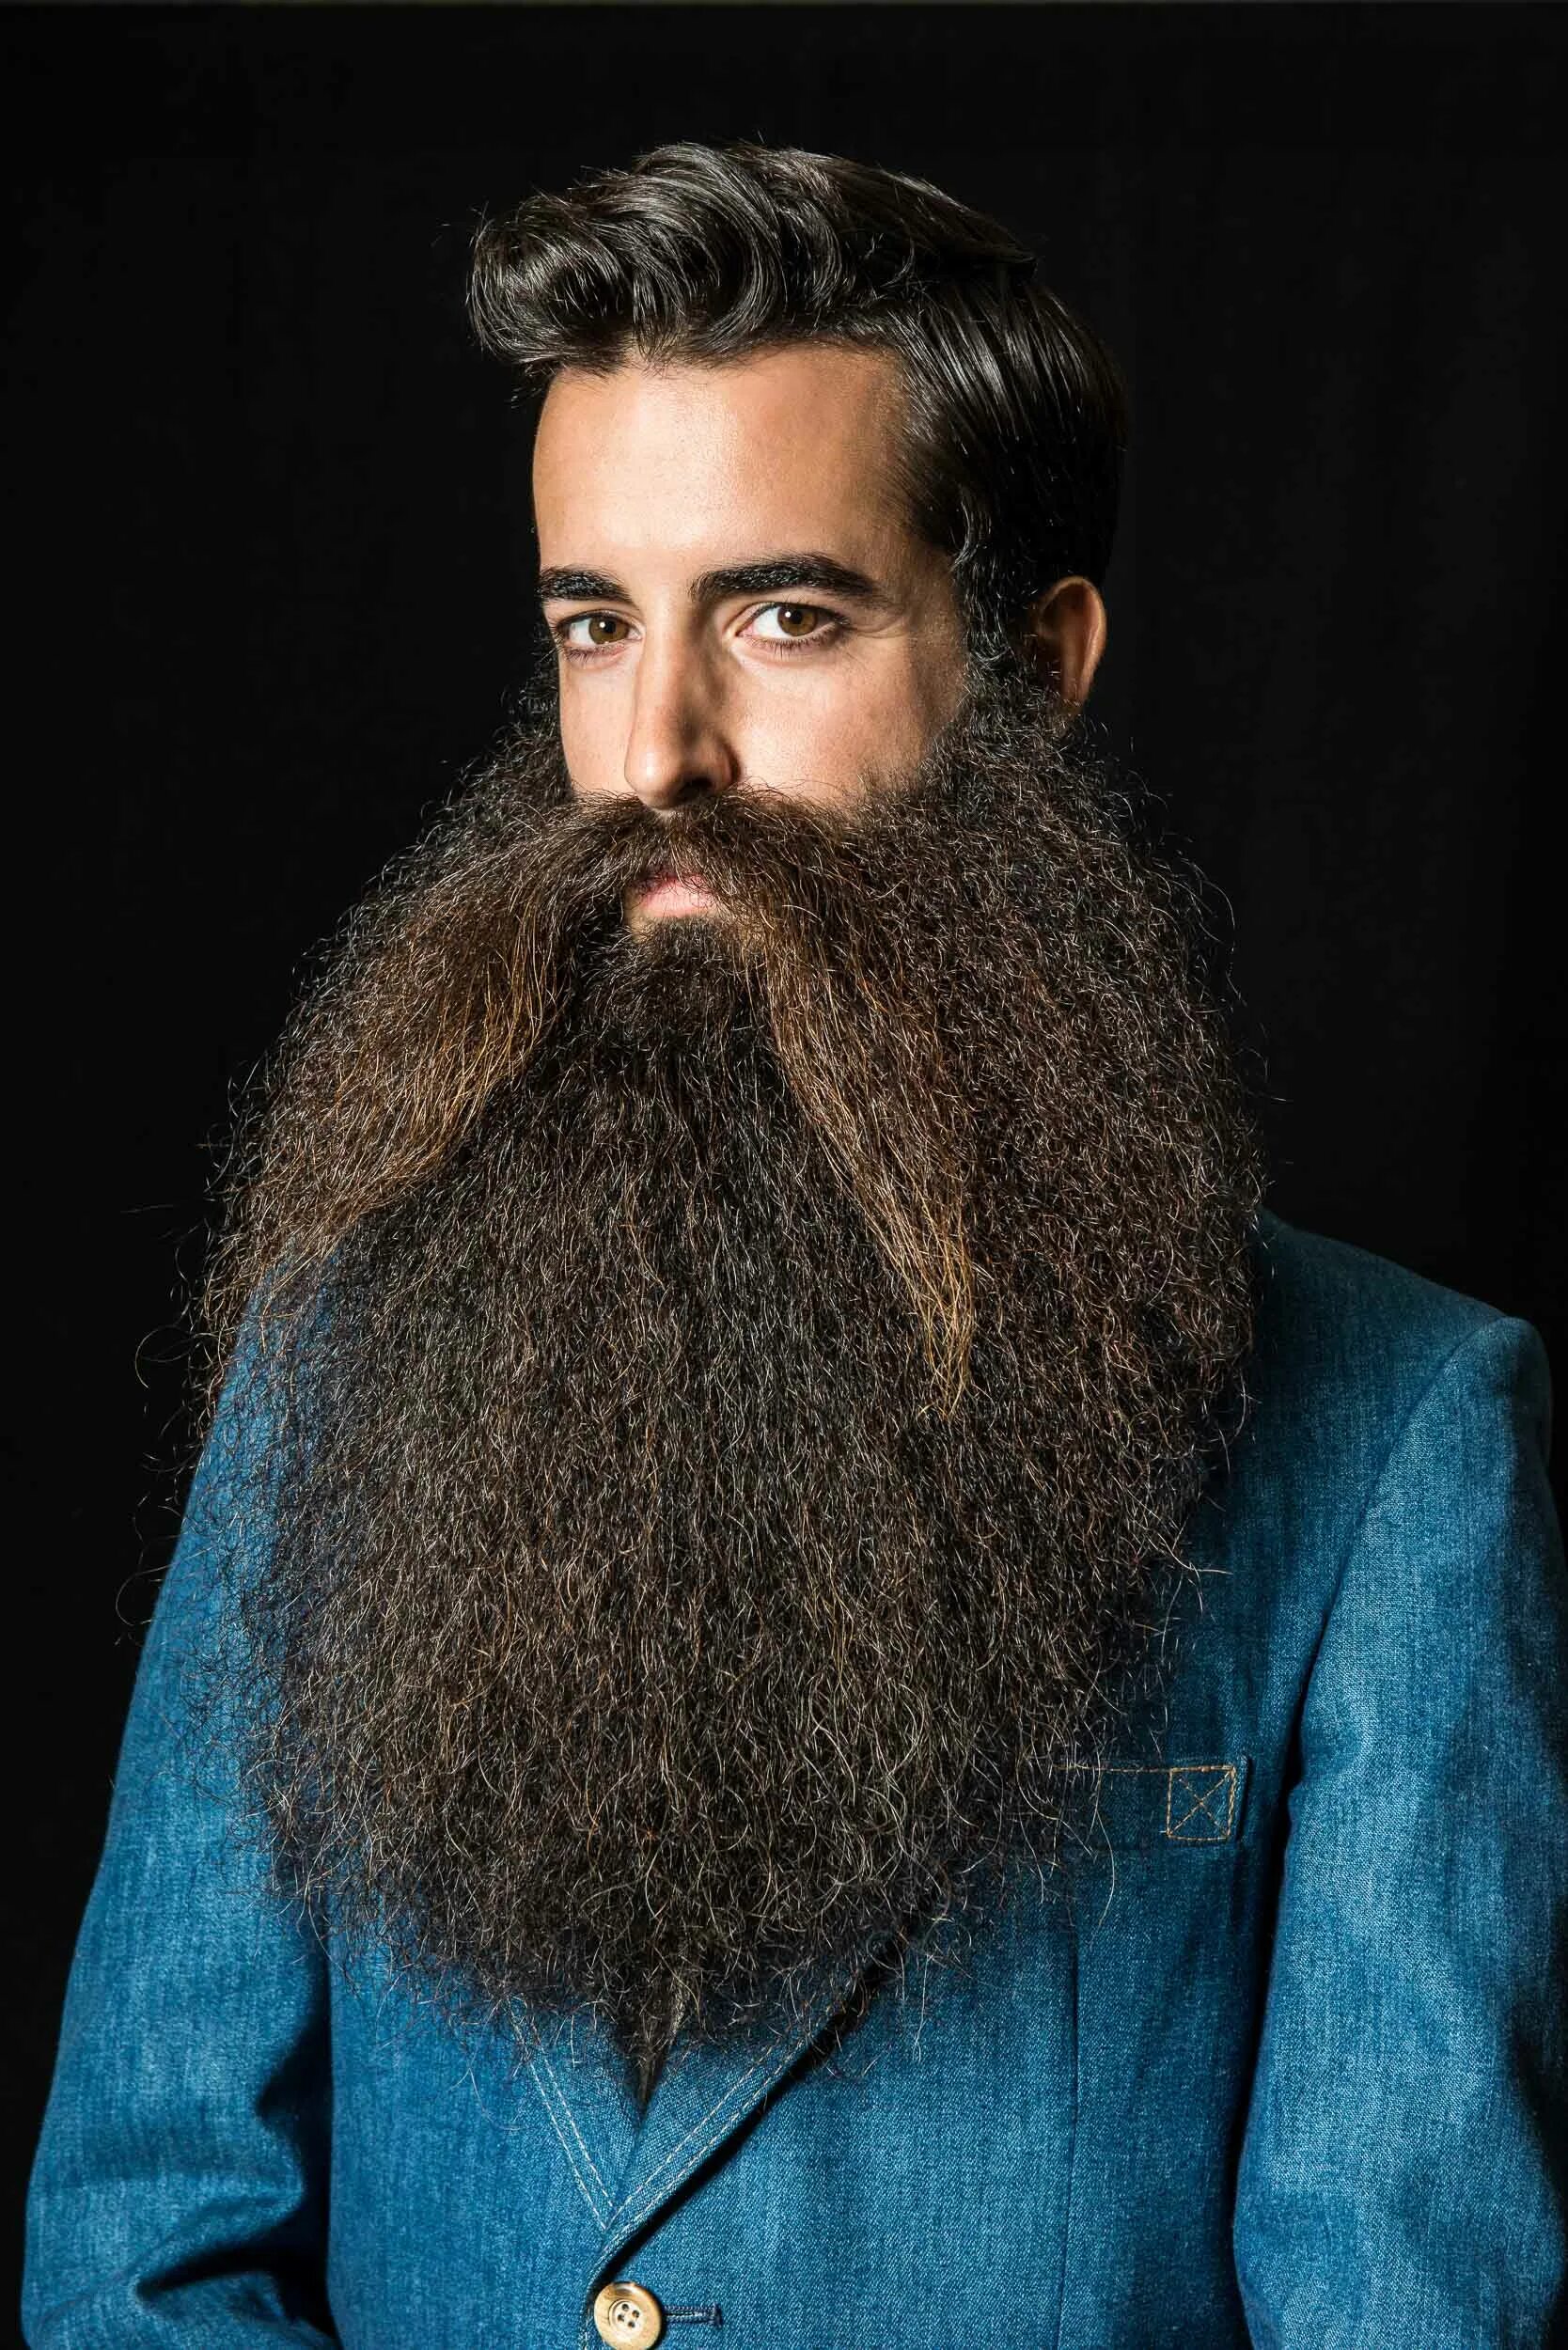 Длинная бородка. Ханс Лангсет борода. Длинная борода. Огромная борода. Бородатый человек.